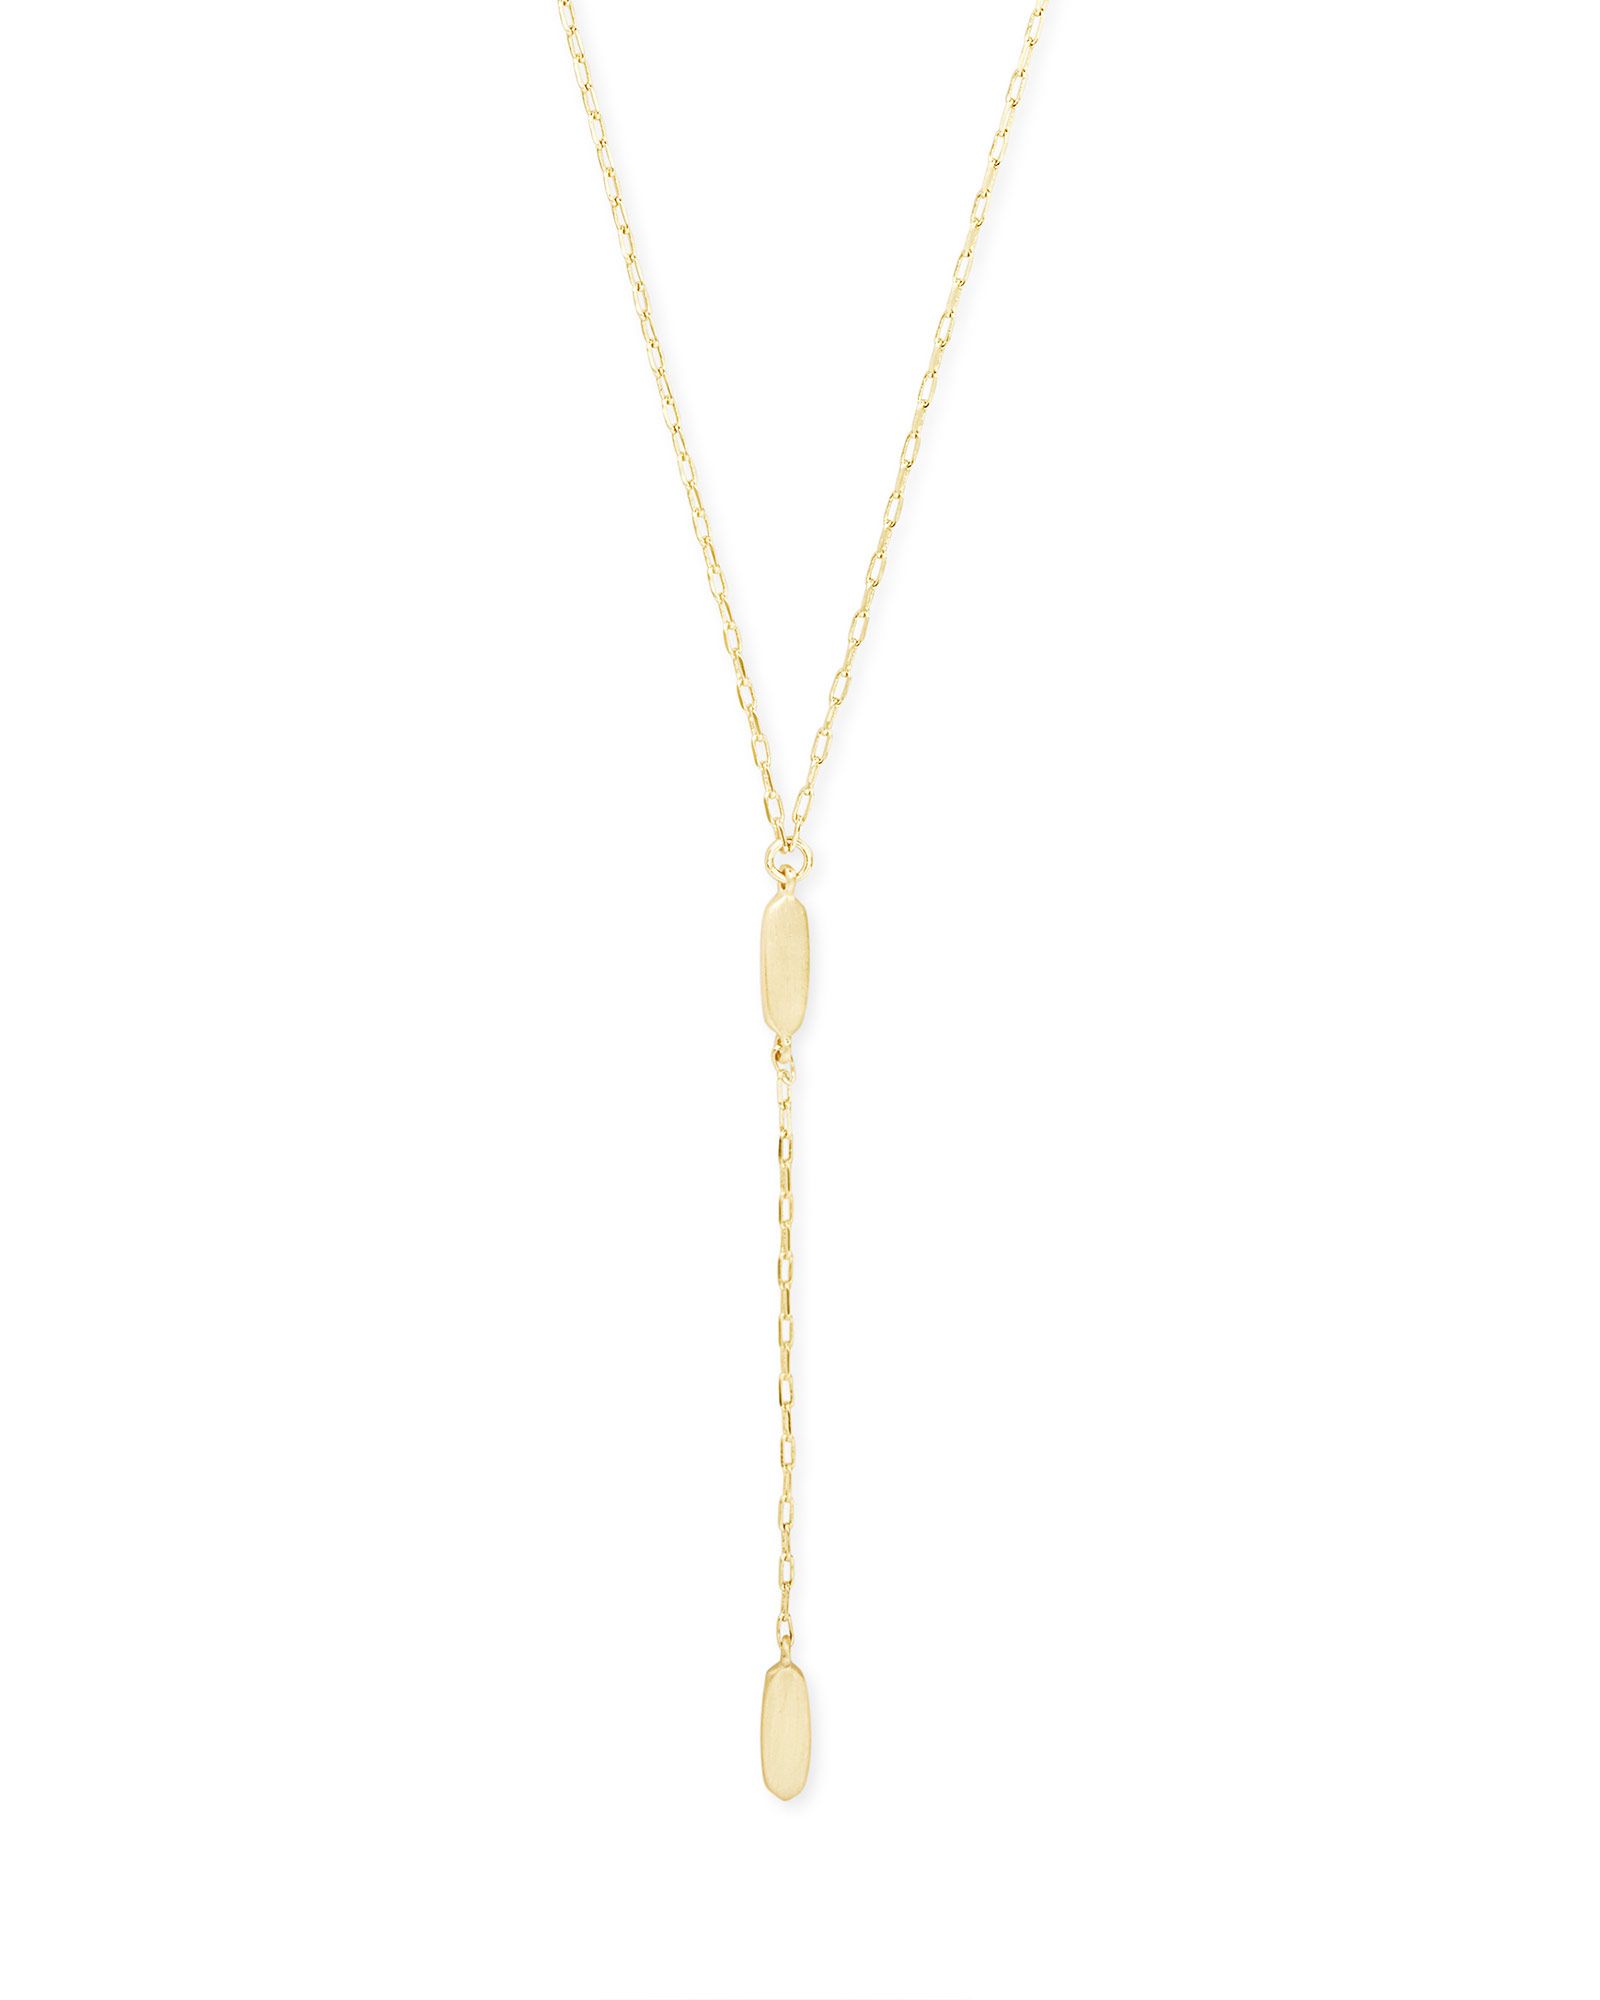 Fern Y Necklace in Gold | Kendra Scott